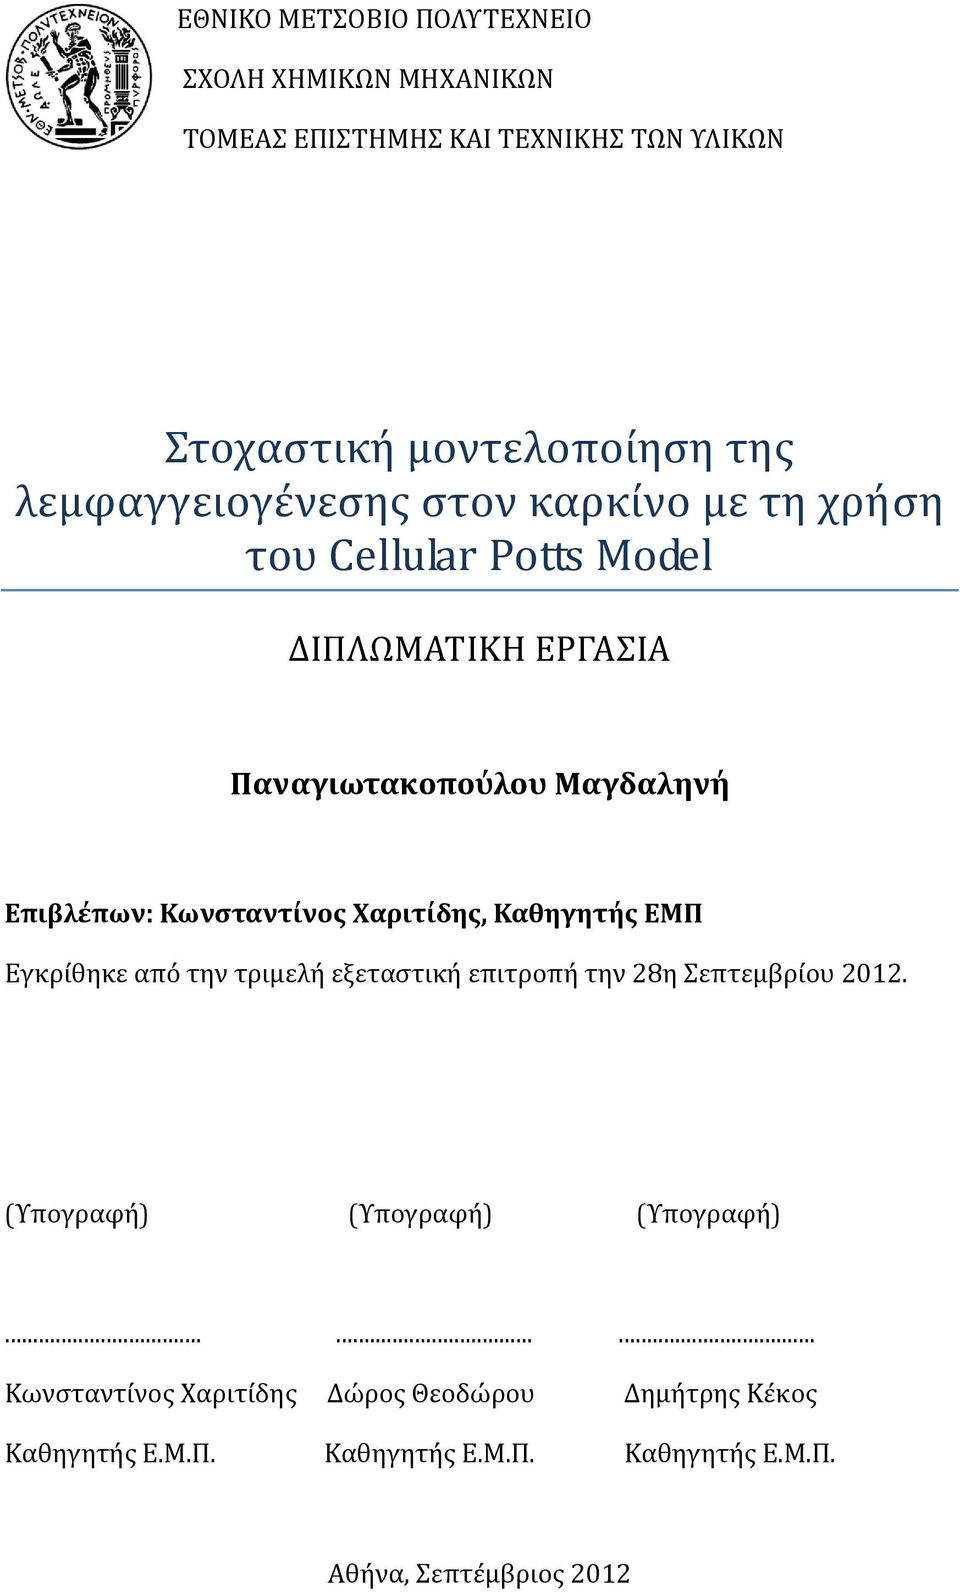 Κωνςταντίνοσ Φαριτίδησ, Καθηγητήσ ΕΜΠ Εγκρίθηκε από την τριμελή εξεταςτική επιτροπή την 28η επτεμβρίου 2012.